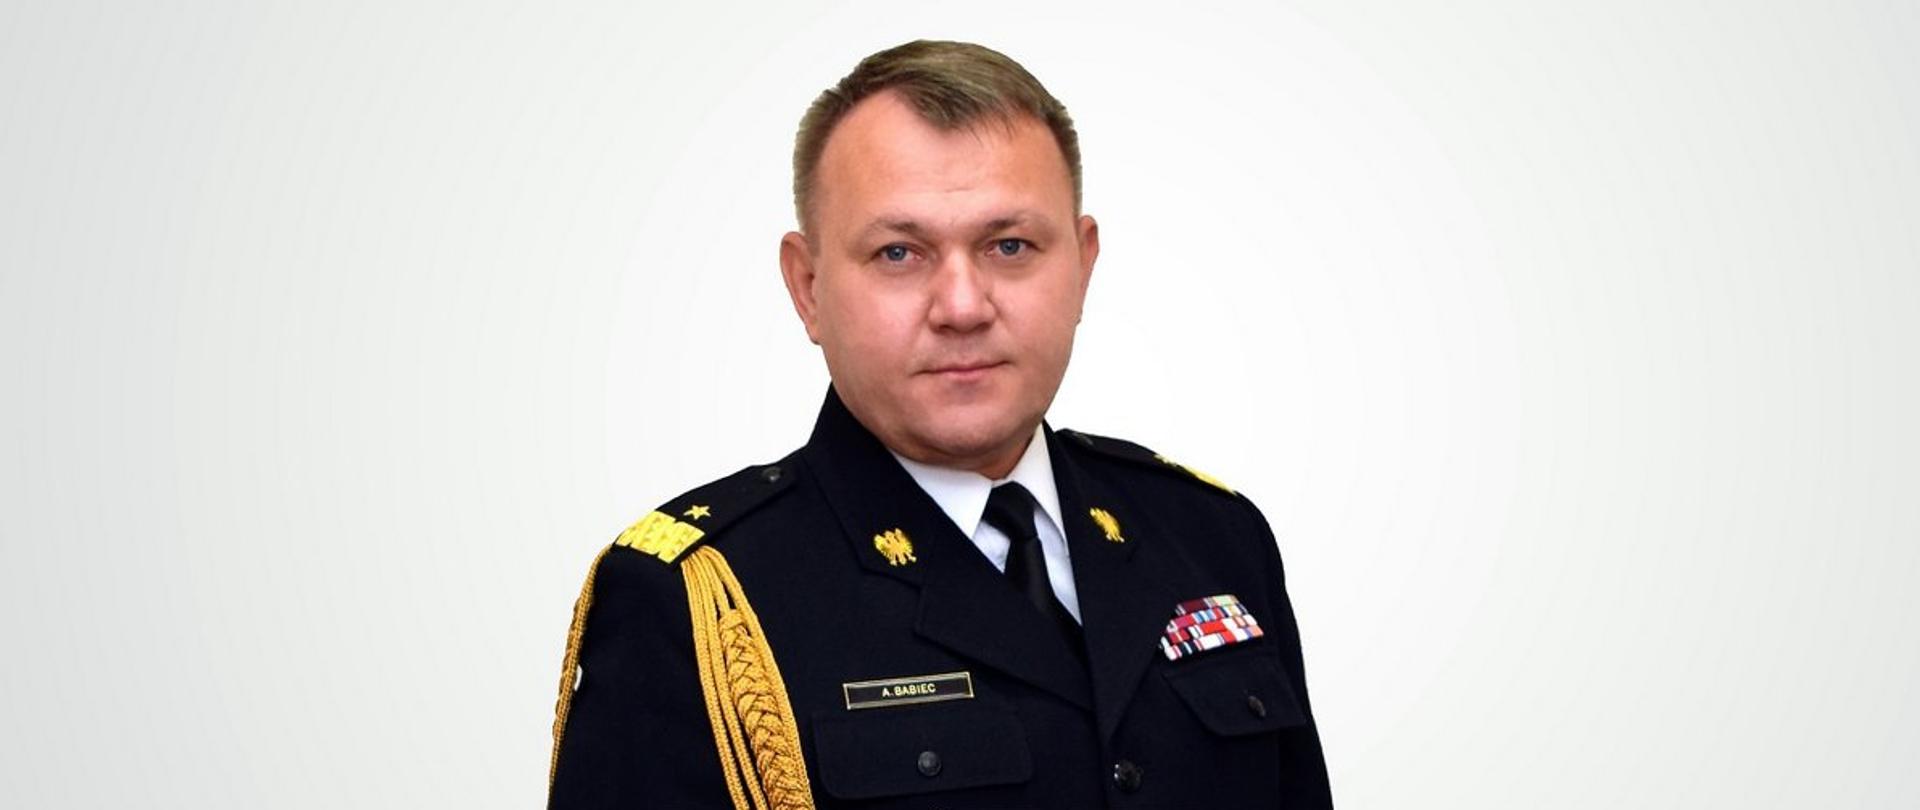 Na szarym tle zdjęcie portretowe Podkarpackiego Komendanta Wojewódzkiego PSP nadbrygadiera Andrzeja Babca w mundurze galowym